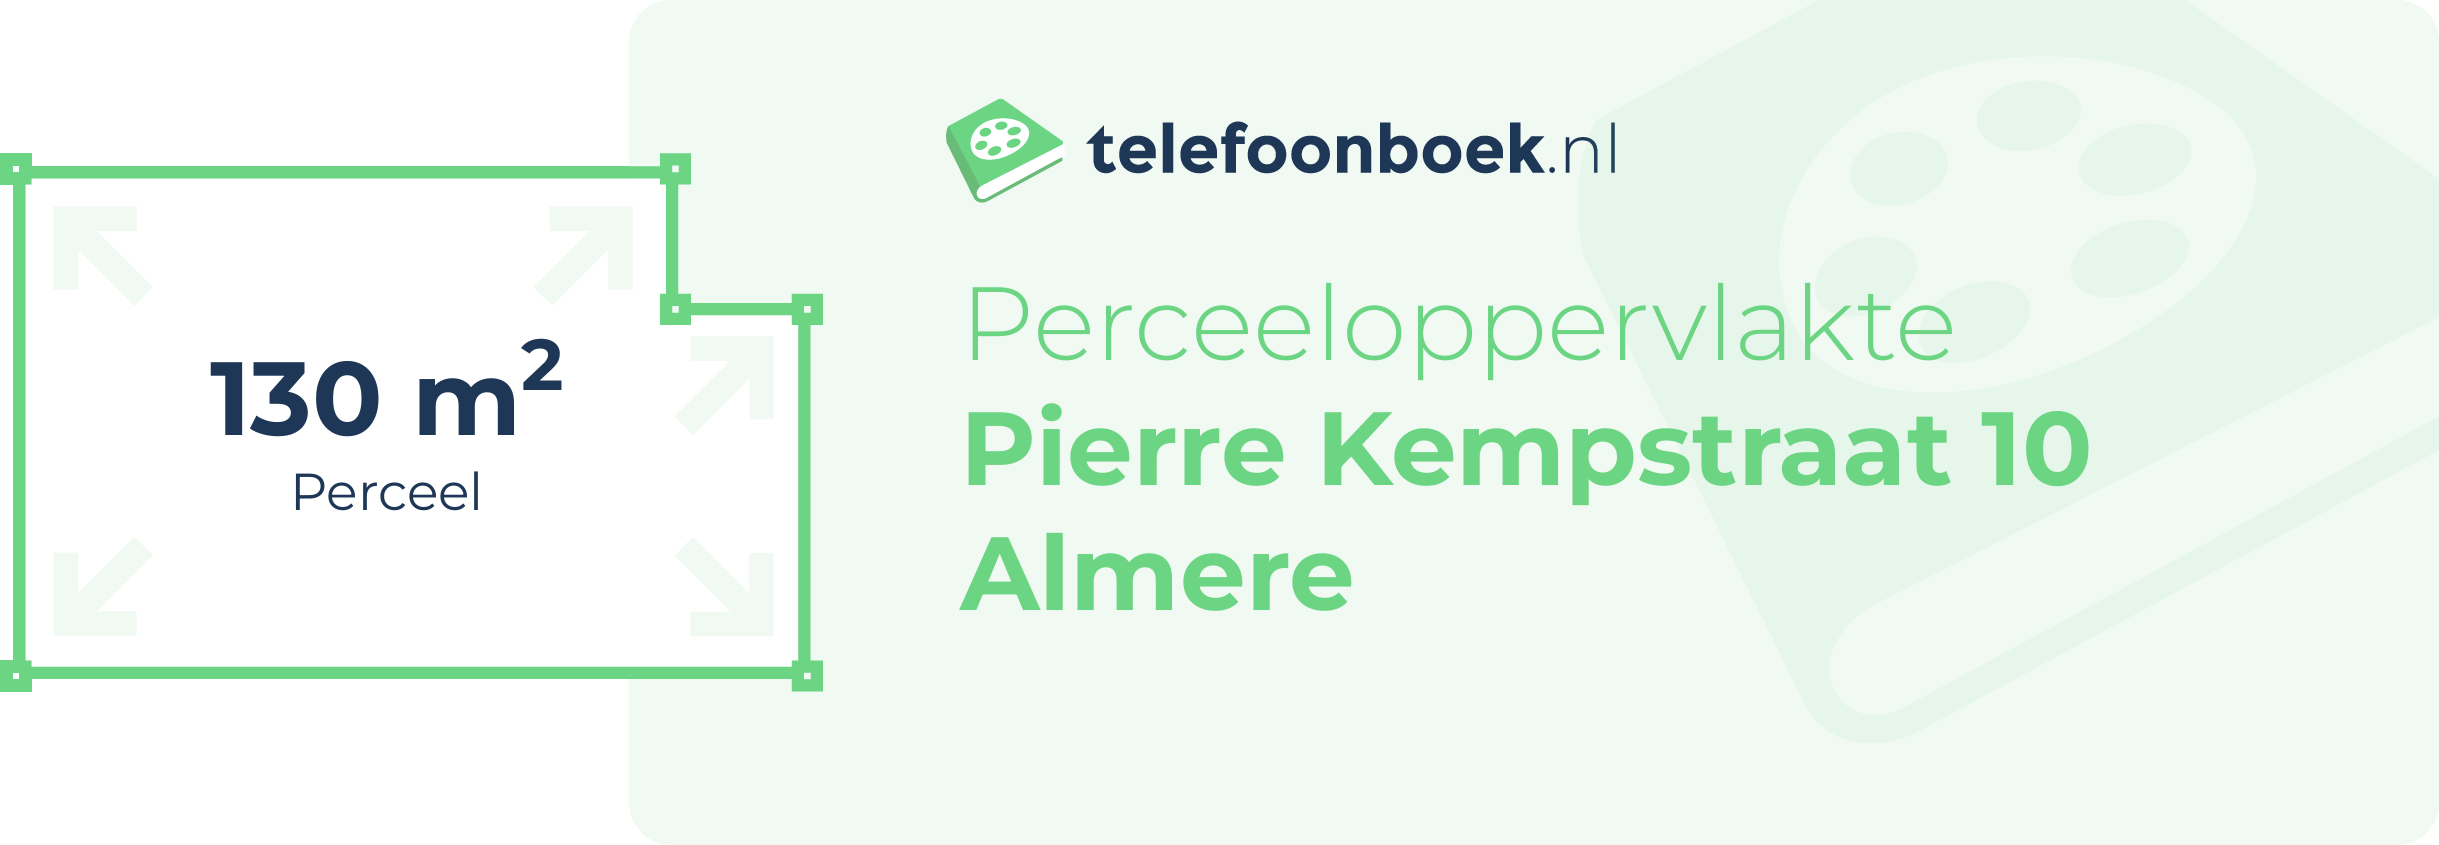 Perceeloppervlakte Pierre Kempstraat 10 Almere